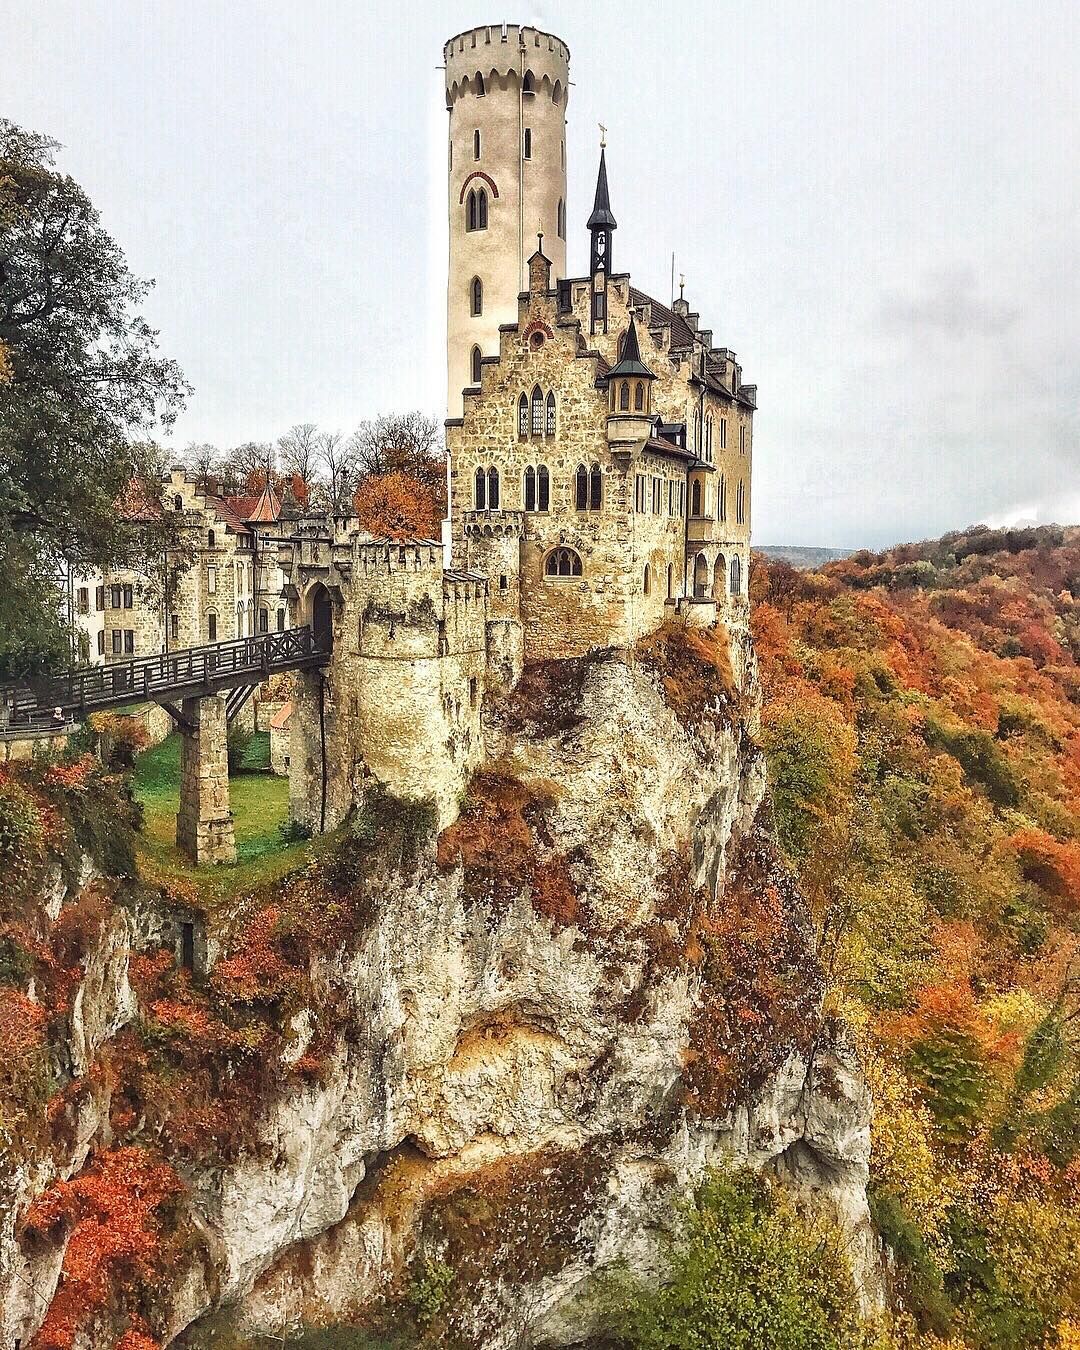 ᐉ замок лихтенштейн, германия - обзор - amsterdamtravel.ru